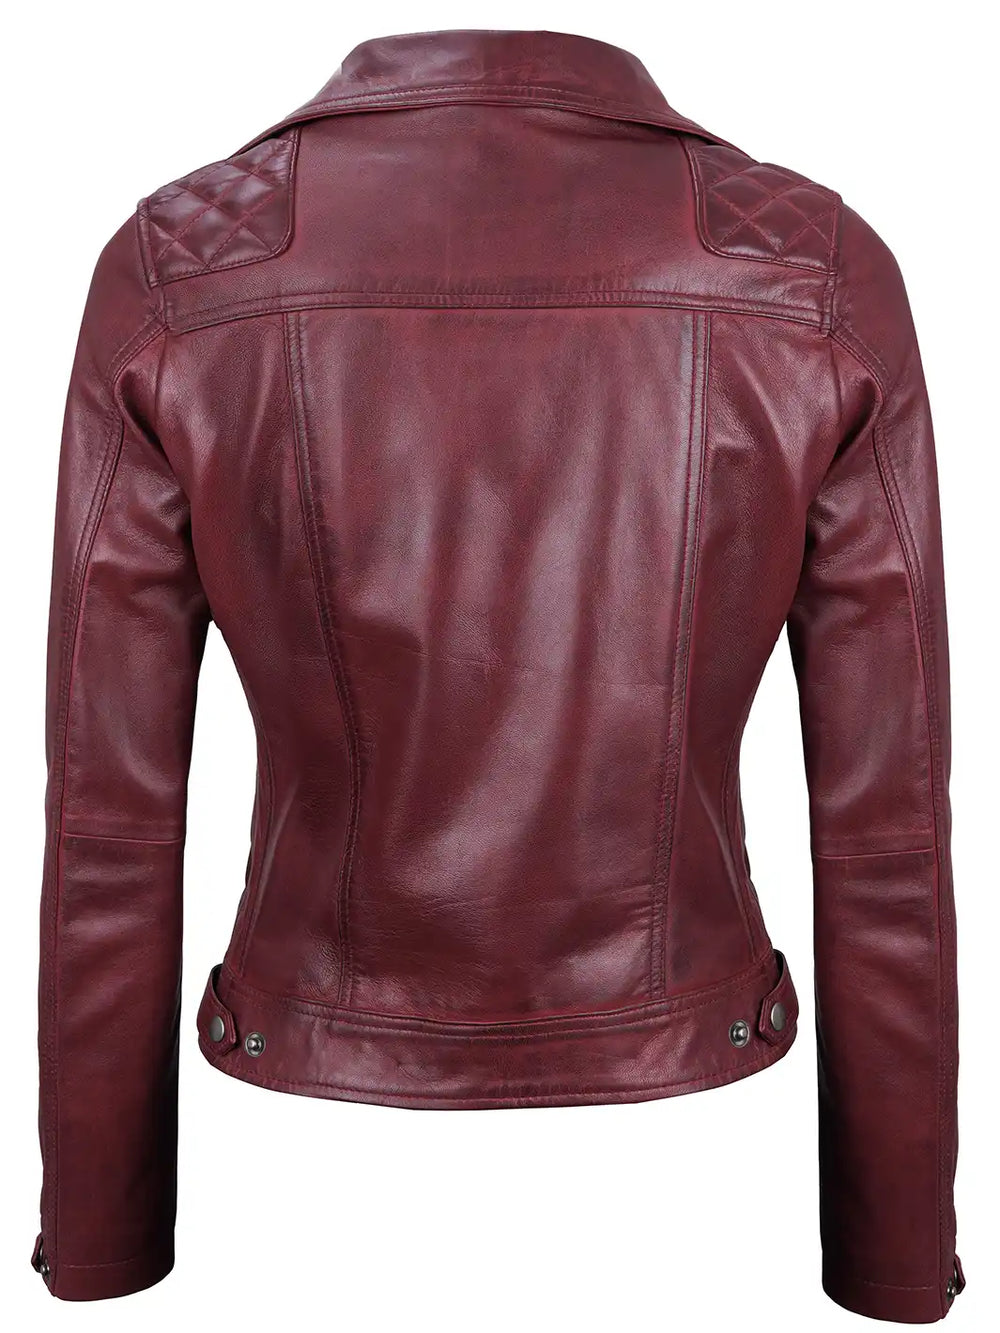 Maroon wax motorcycle leather jacket